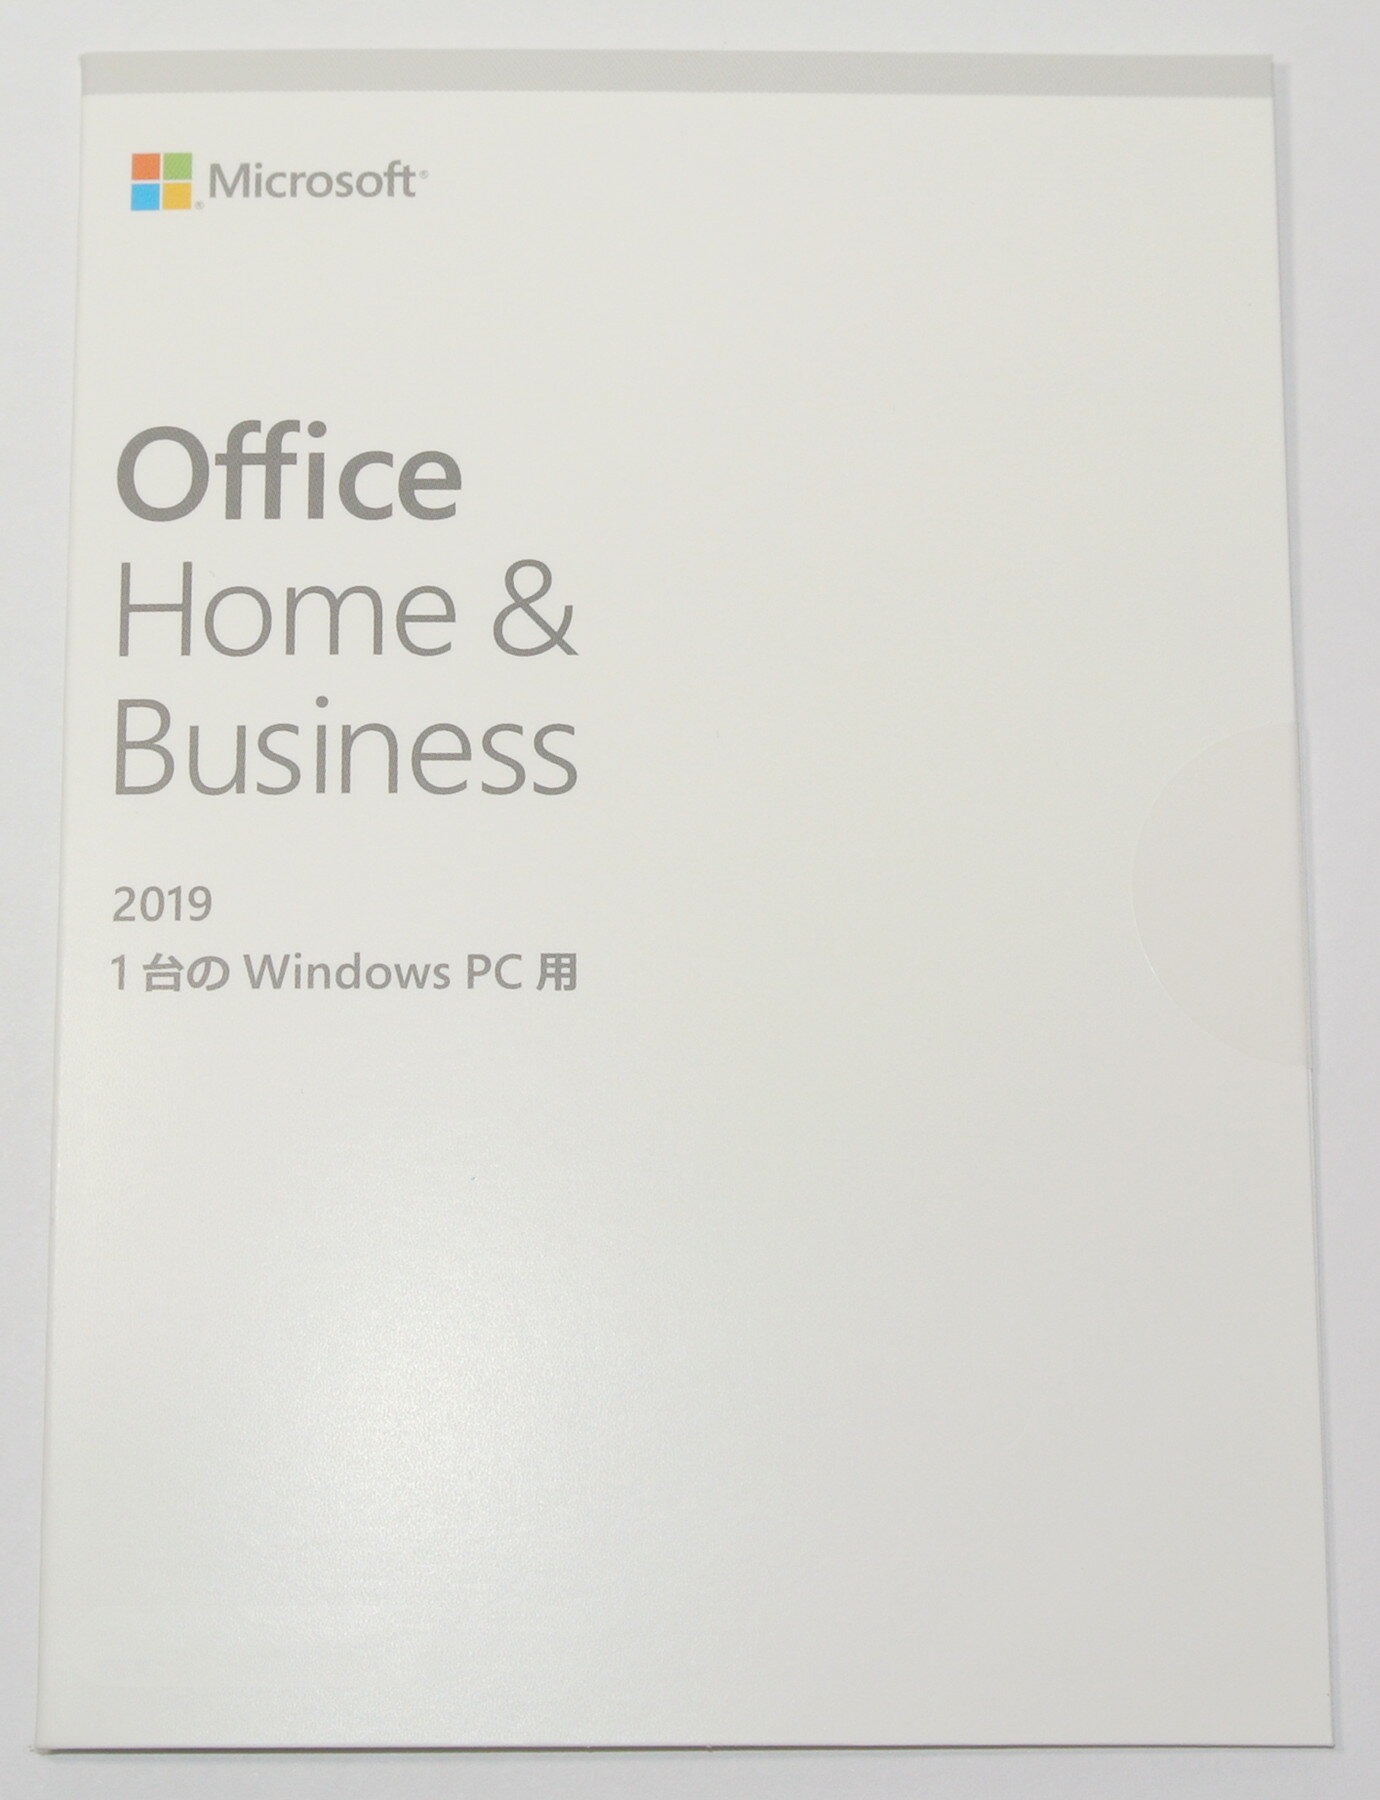 (単品販売不可商品)Microsoft Office Home Business 2019 OEM版/1台のWindows PC用/新品未開封/日本語永続版/送料無料